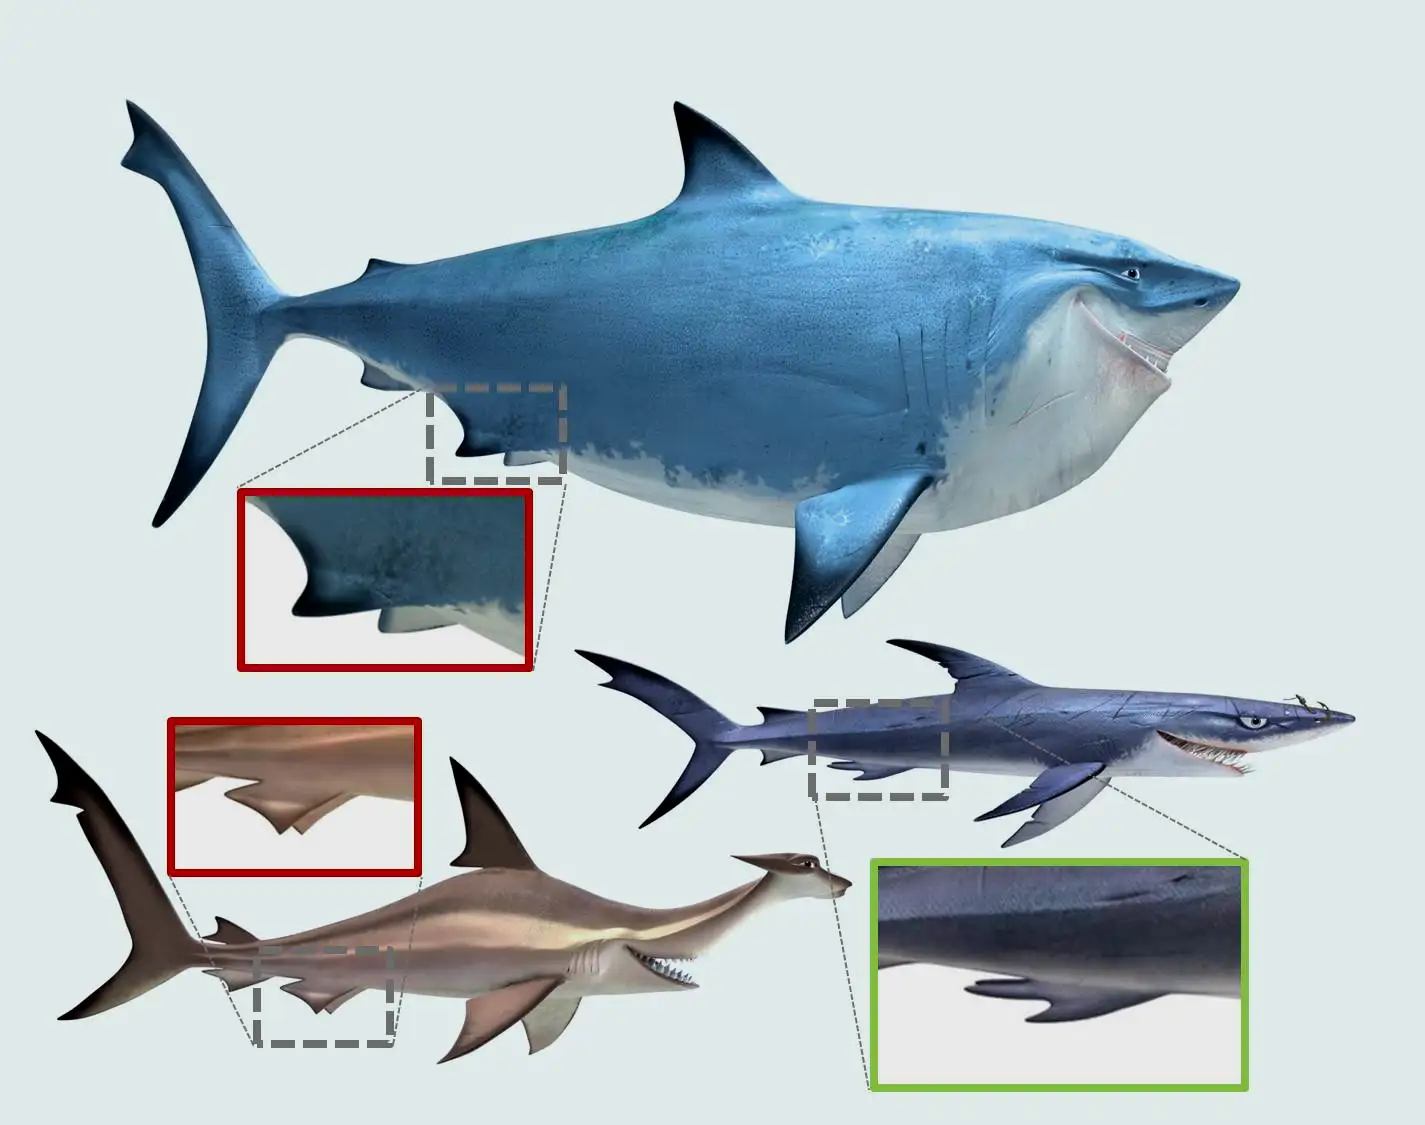 《海底总动员》里的三条鲨鱼似乎都是雄性的，但是实际上只有丘姆有鳍脚，所以布鲁斯和安可其实都是雌性的，安可也许没有爸爸（双髻鲨能孤雌生殖）